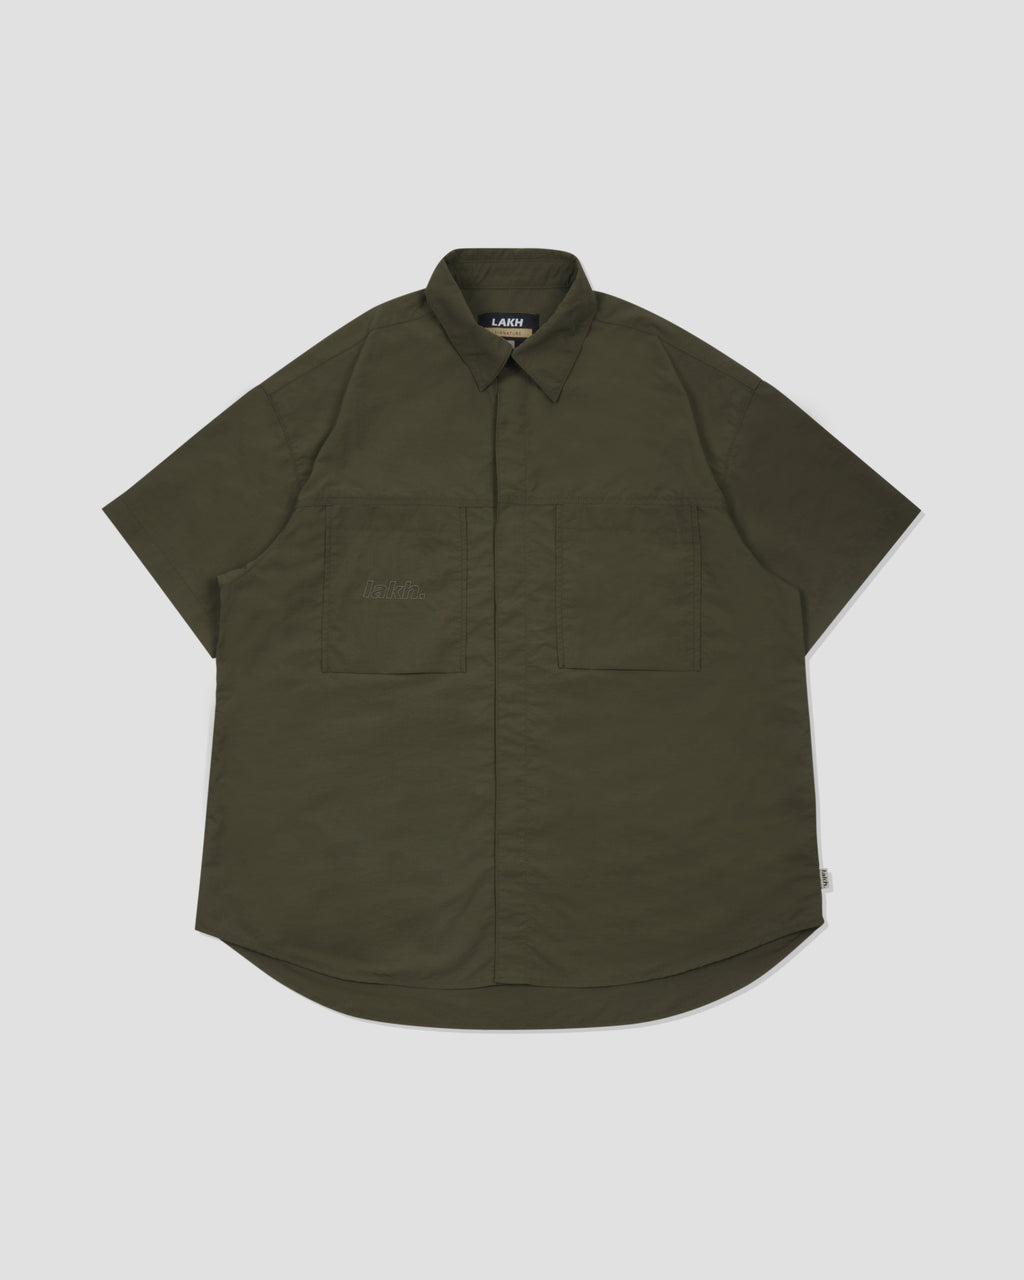 S/S Oversized Shirt - Olive